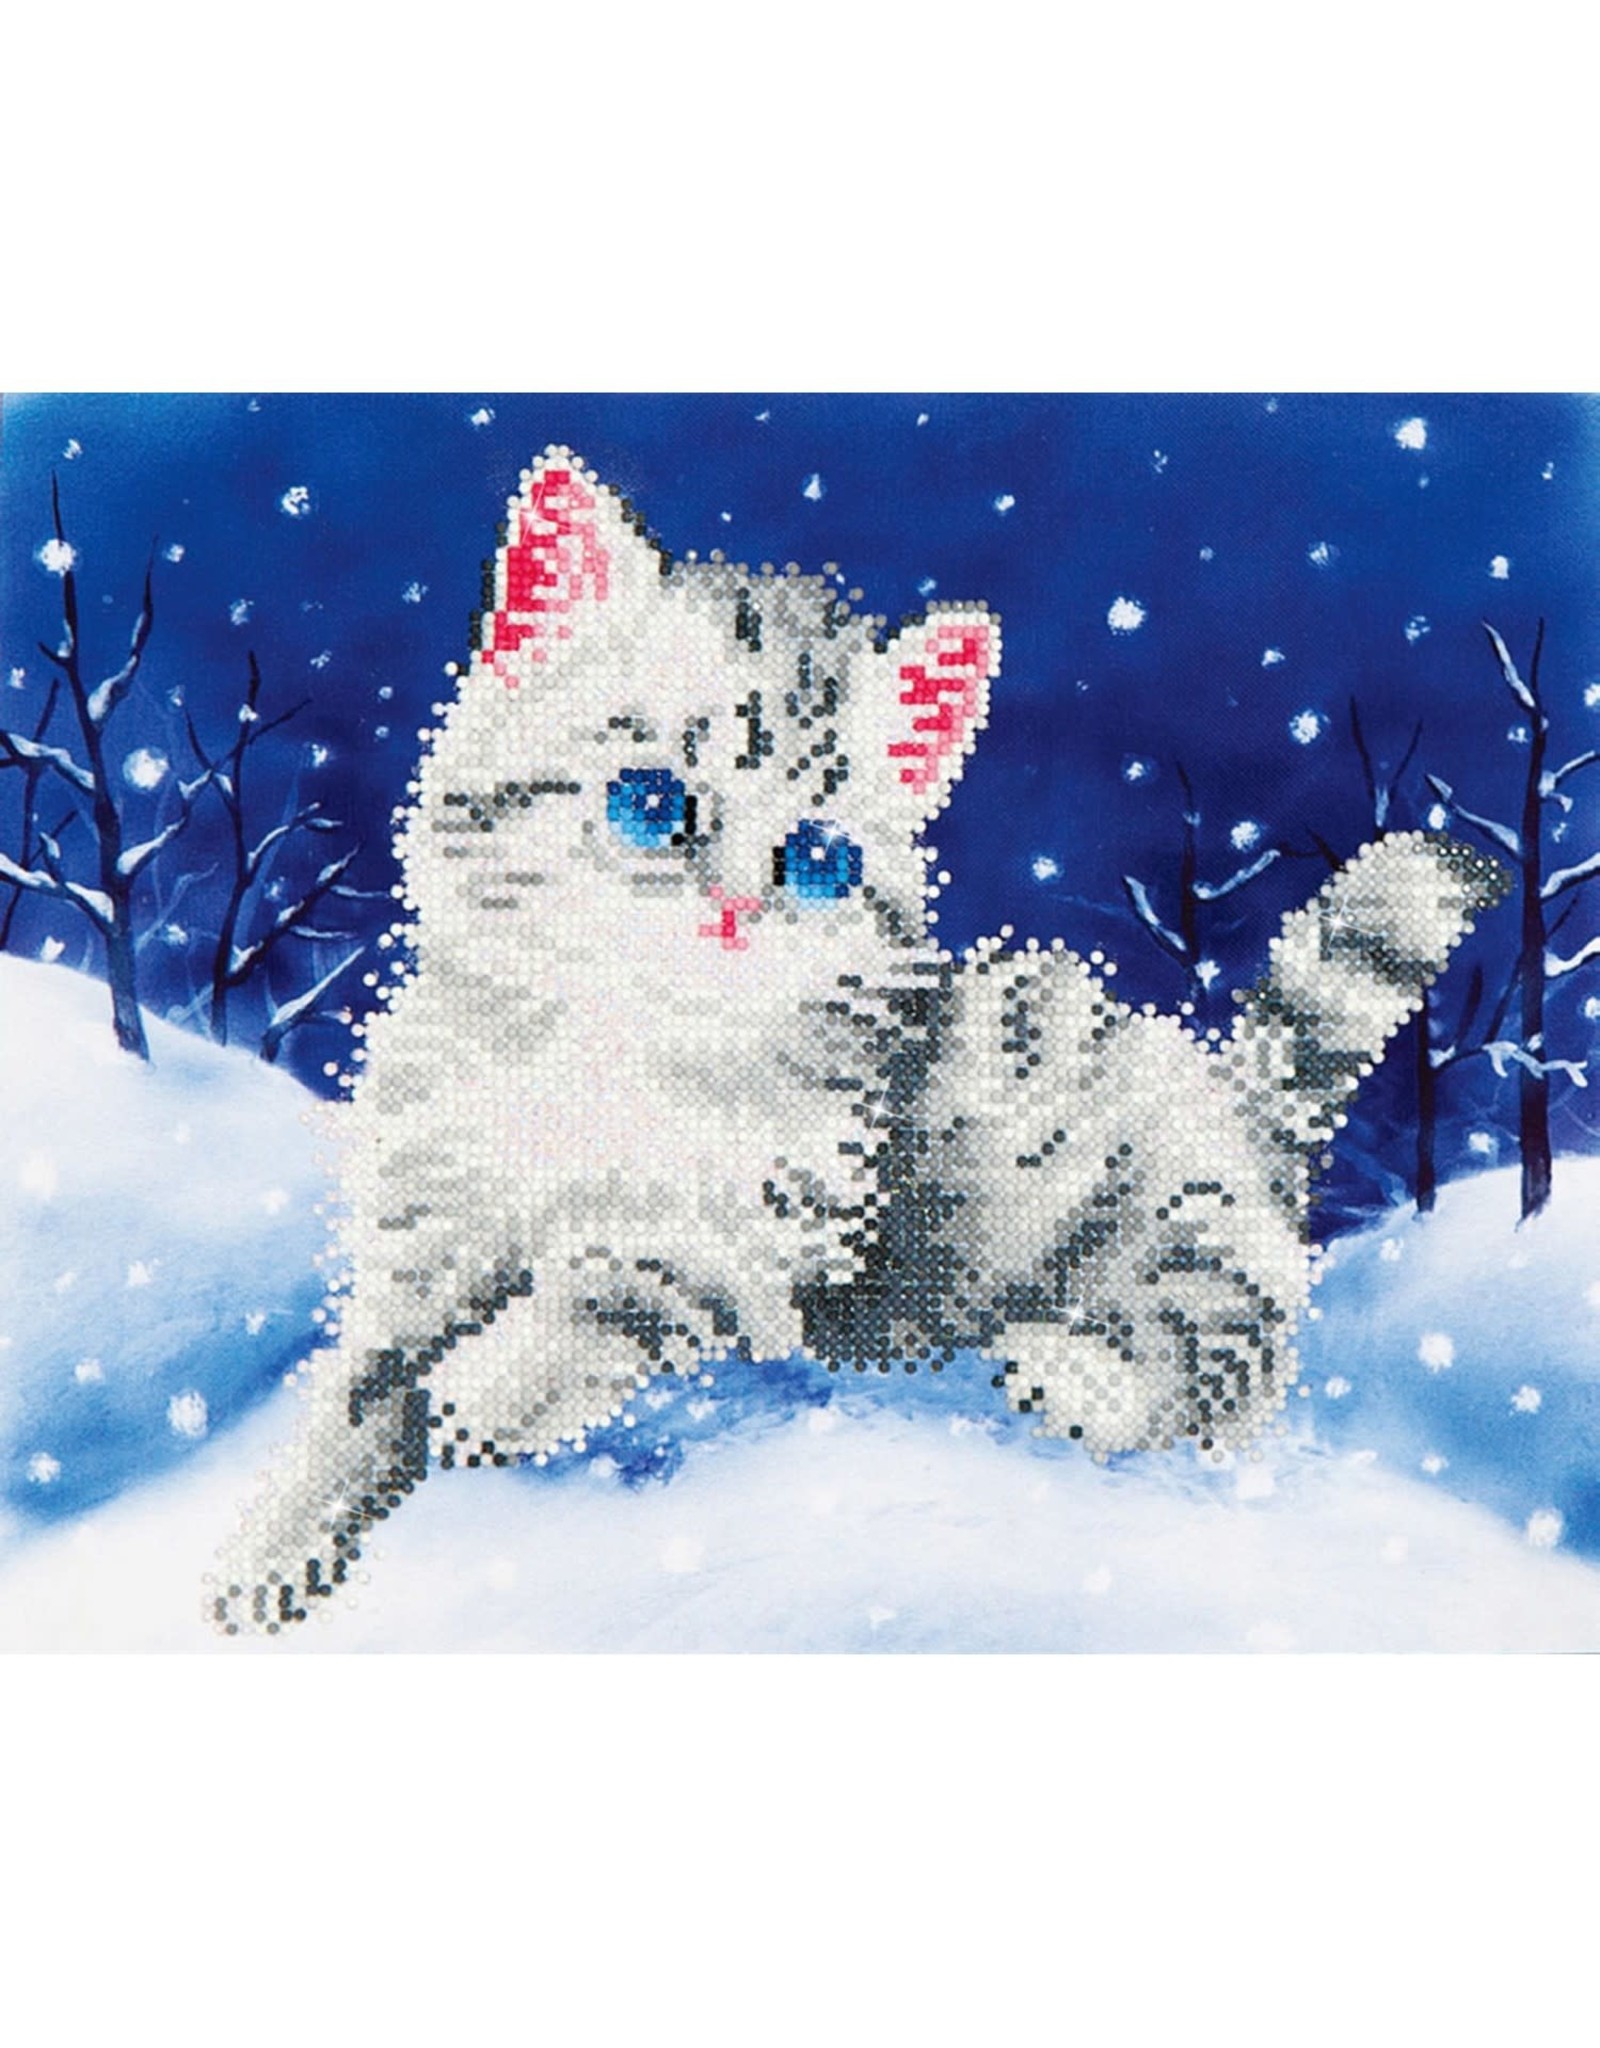 CLEARANCE Diamond Dotz Kitten in the Snow